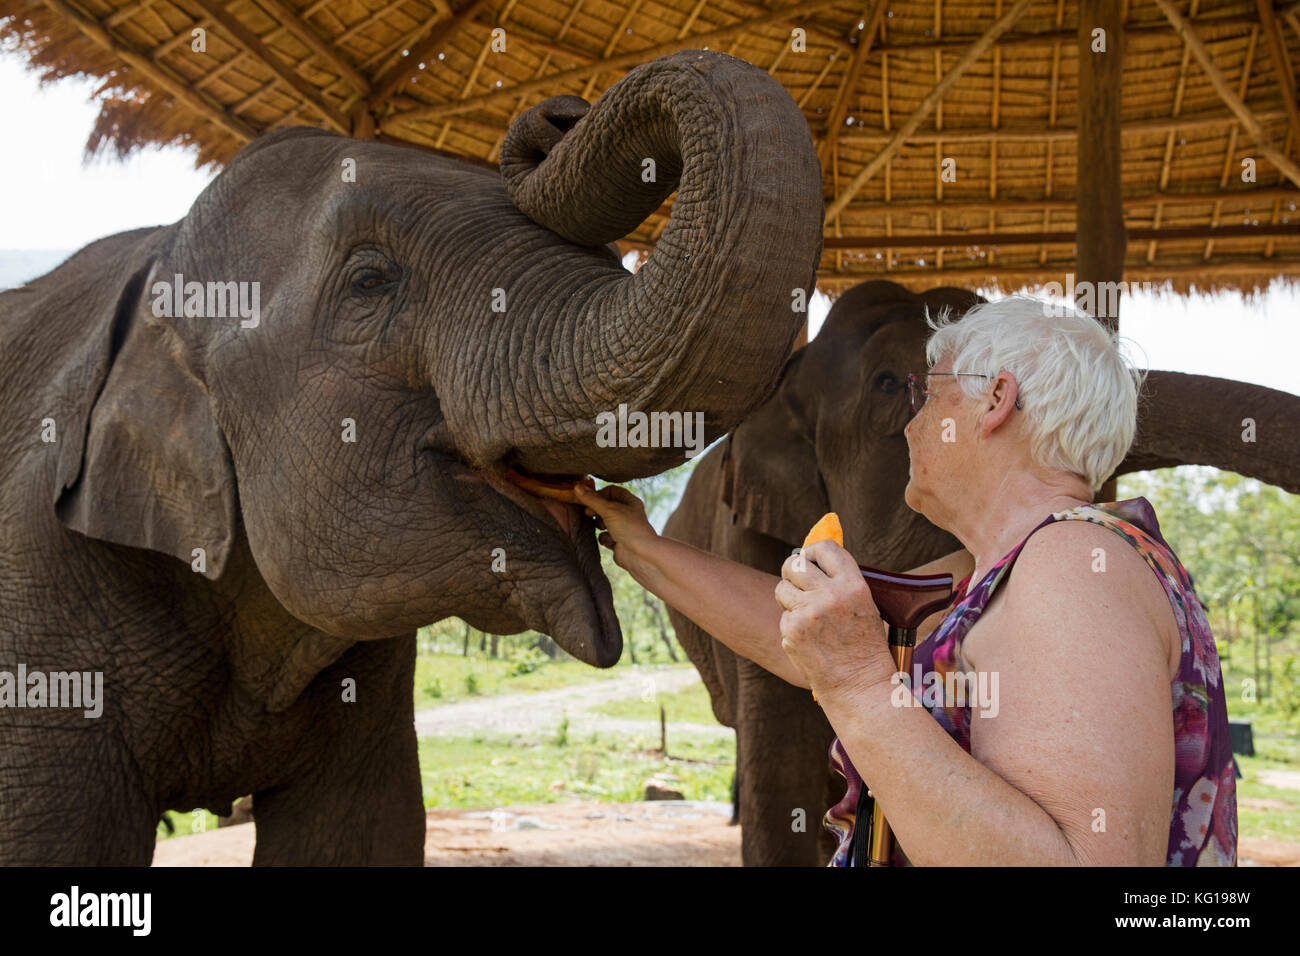 Les Eléphants d'alimentation tourisme / l'éléphant d'Asie (Elephas maximus) dans la région de elephant camp au Myanmar / Birmanie Banque D'Images